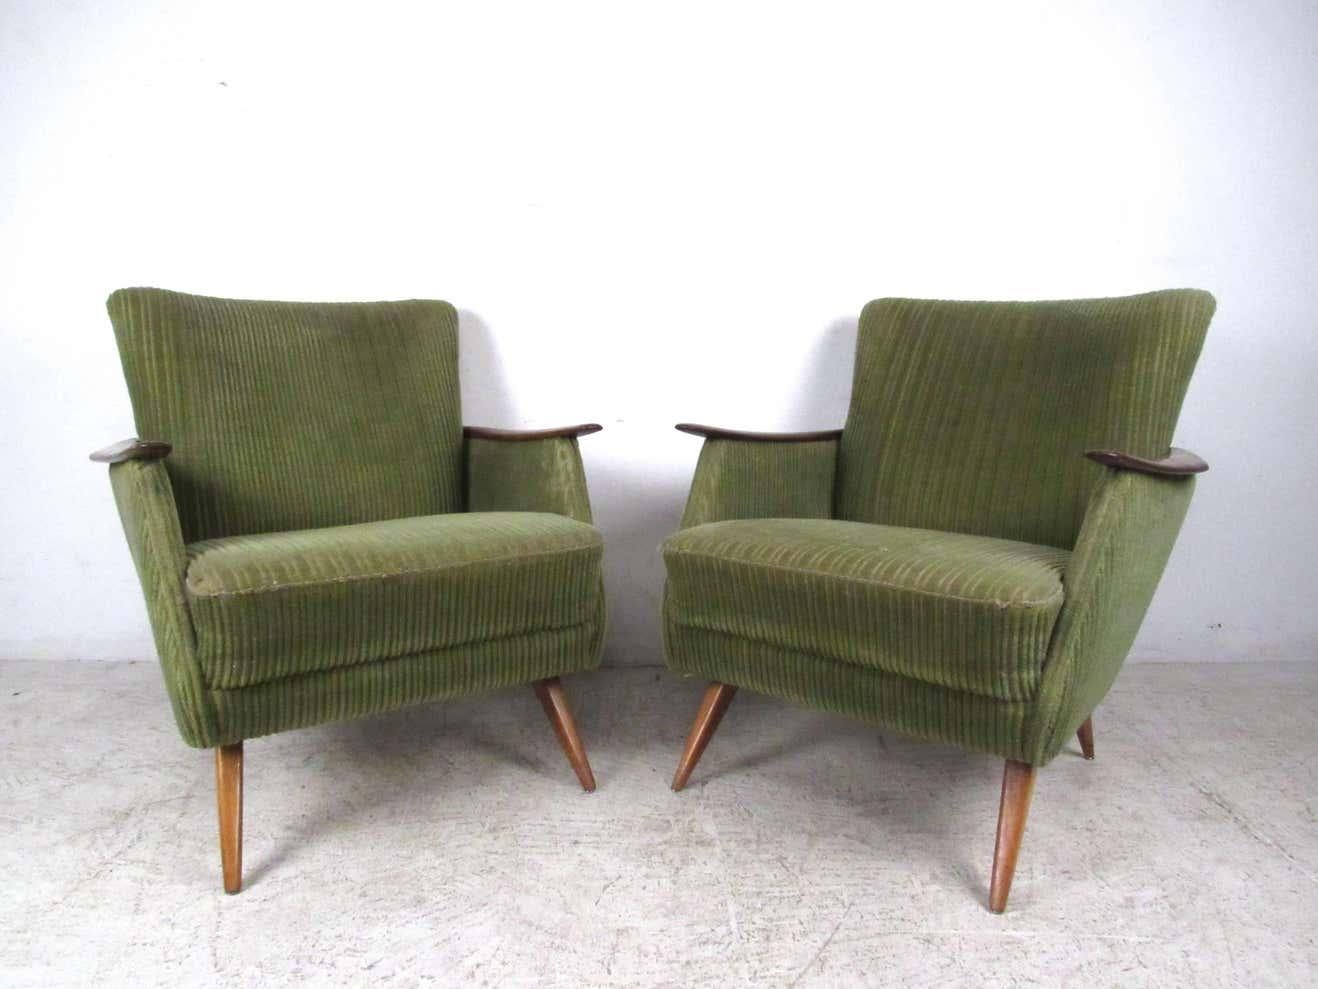 Cette superbe paire de fauteuils danois vintage se caractérise par des pieds fuselés uniques, des accoudoirs en bois sculptés et des garnitures en bois enveloppantes. Le style vintage et le confort moderne de cette paire en font un ajout unique à